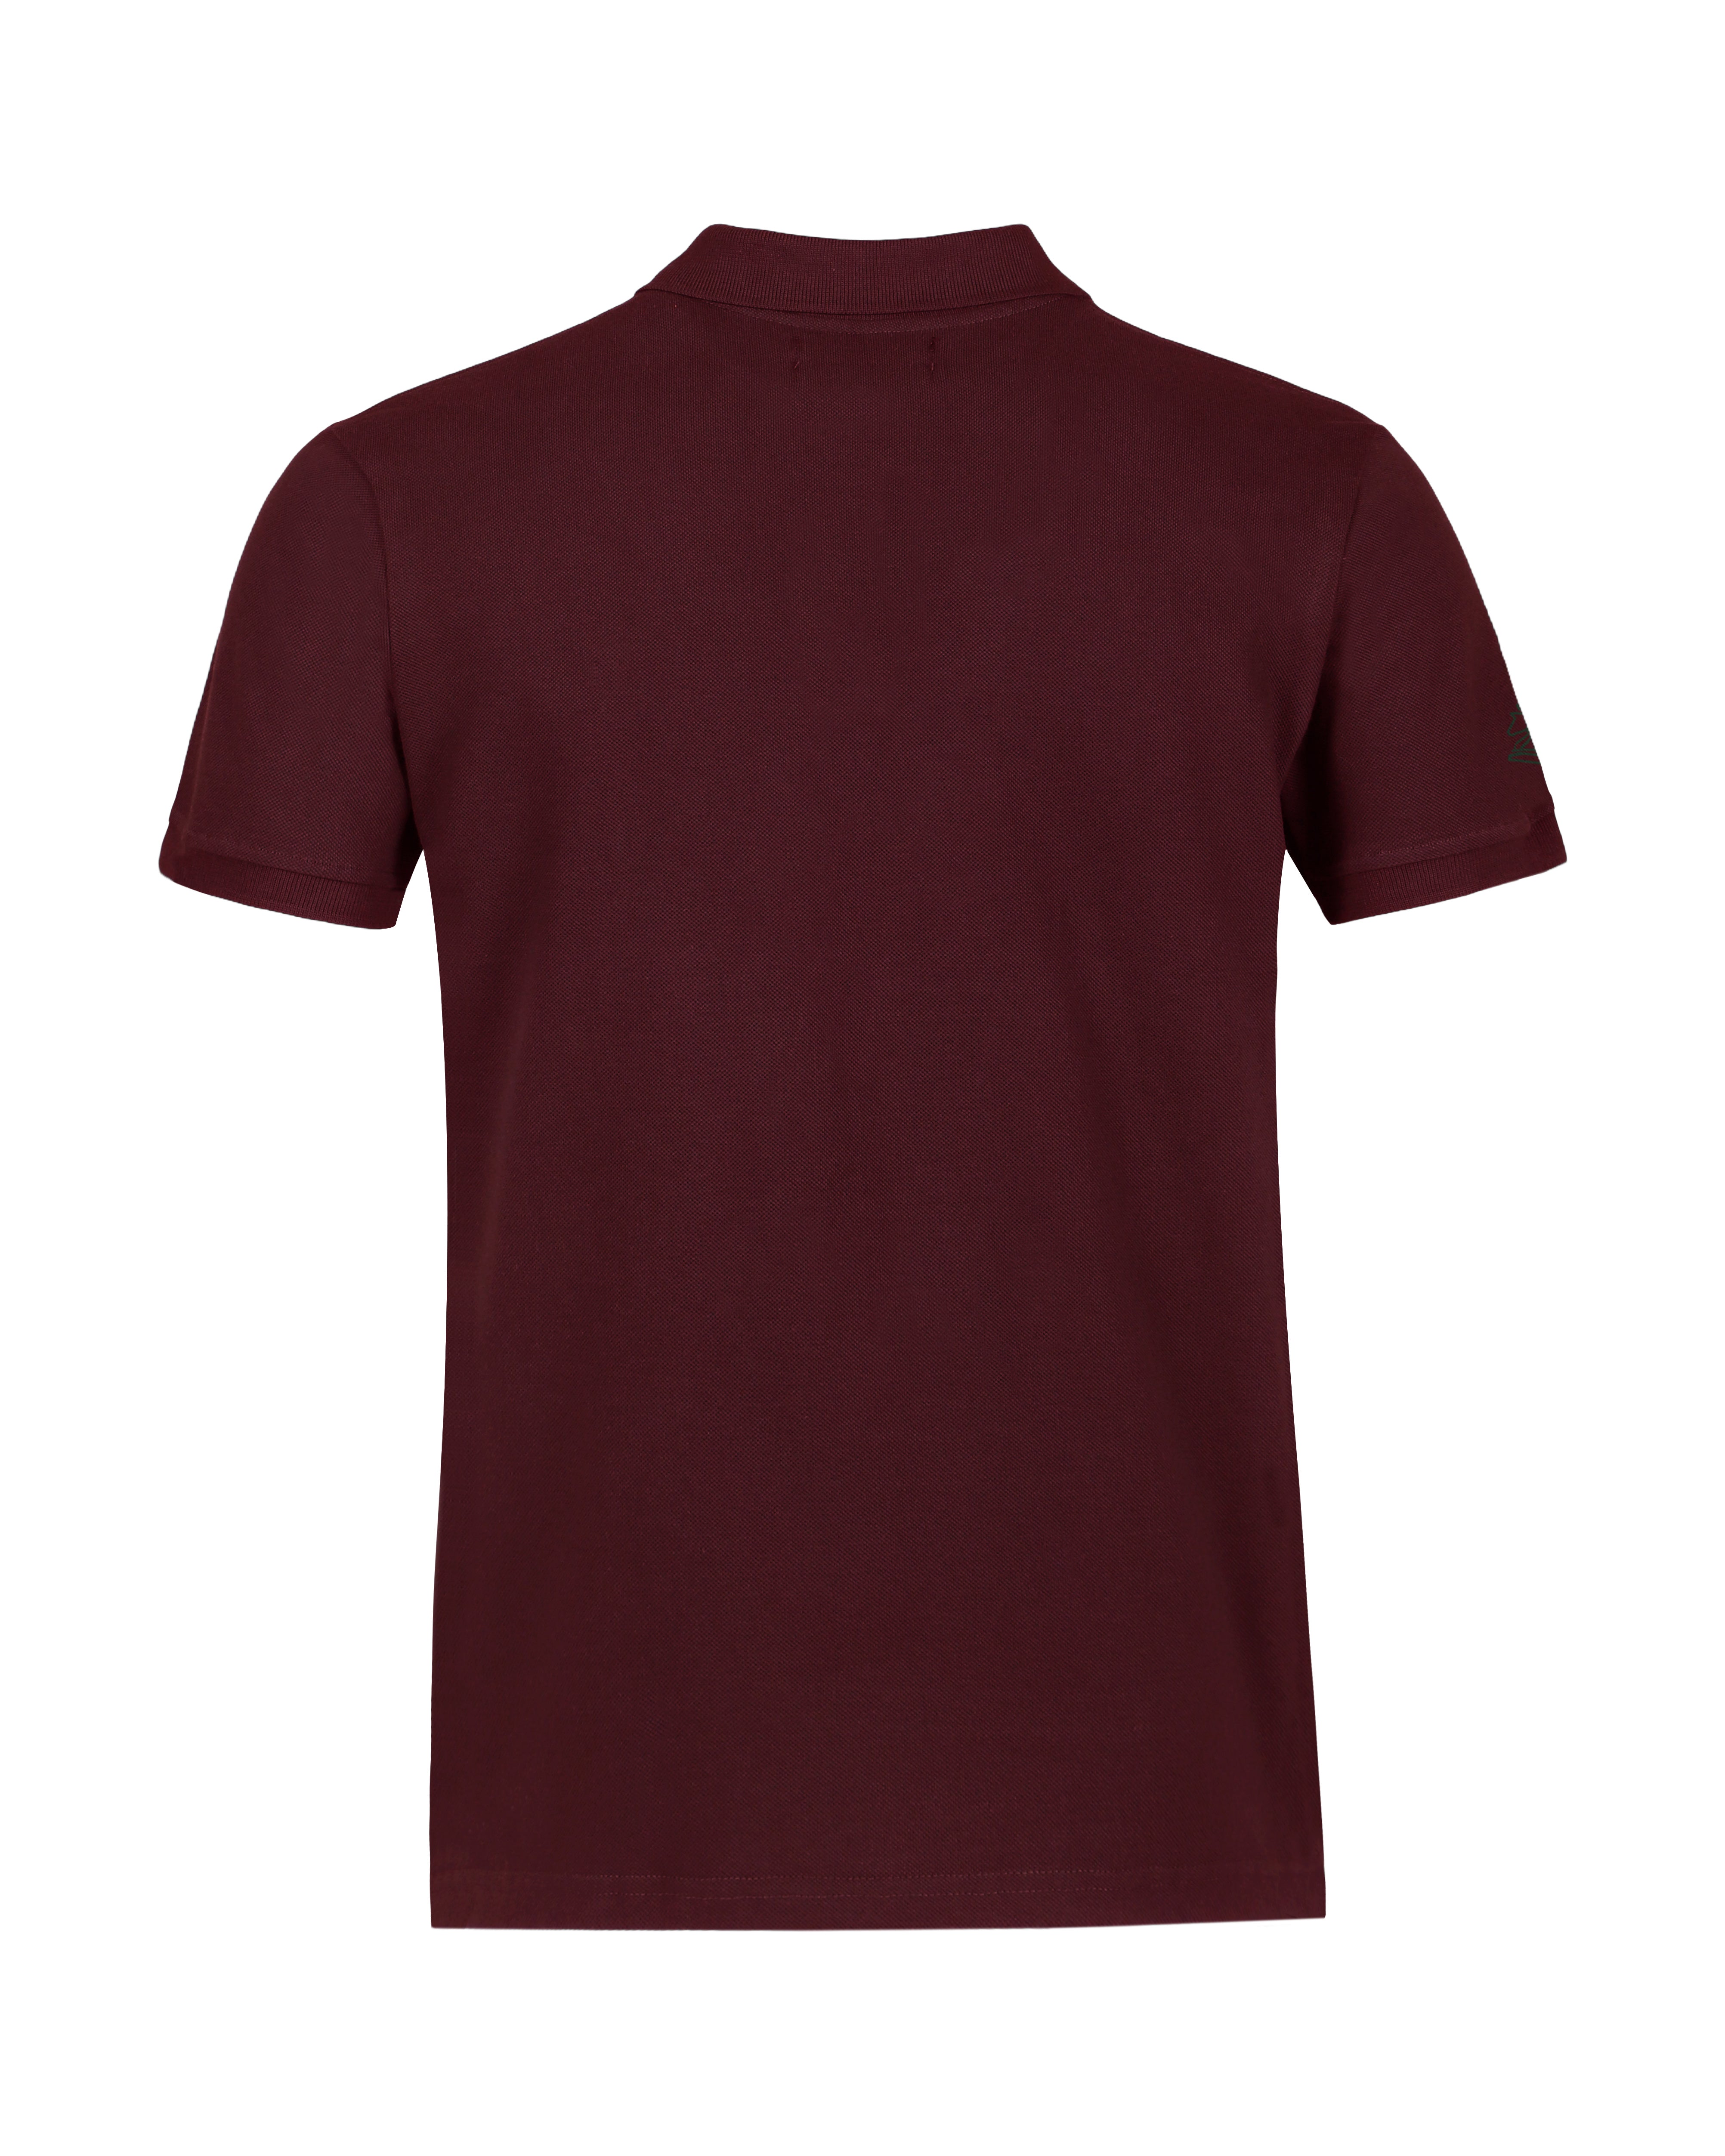 Maroon  Color Premium Cotton T-Shirt